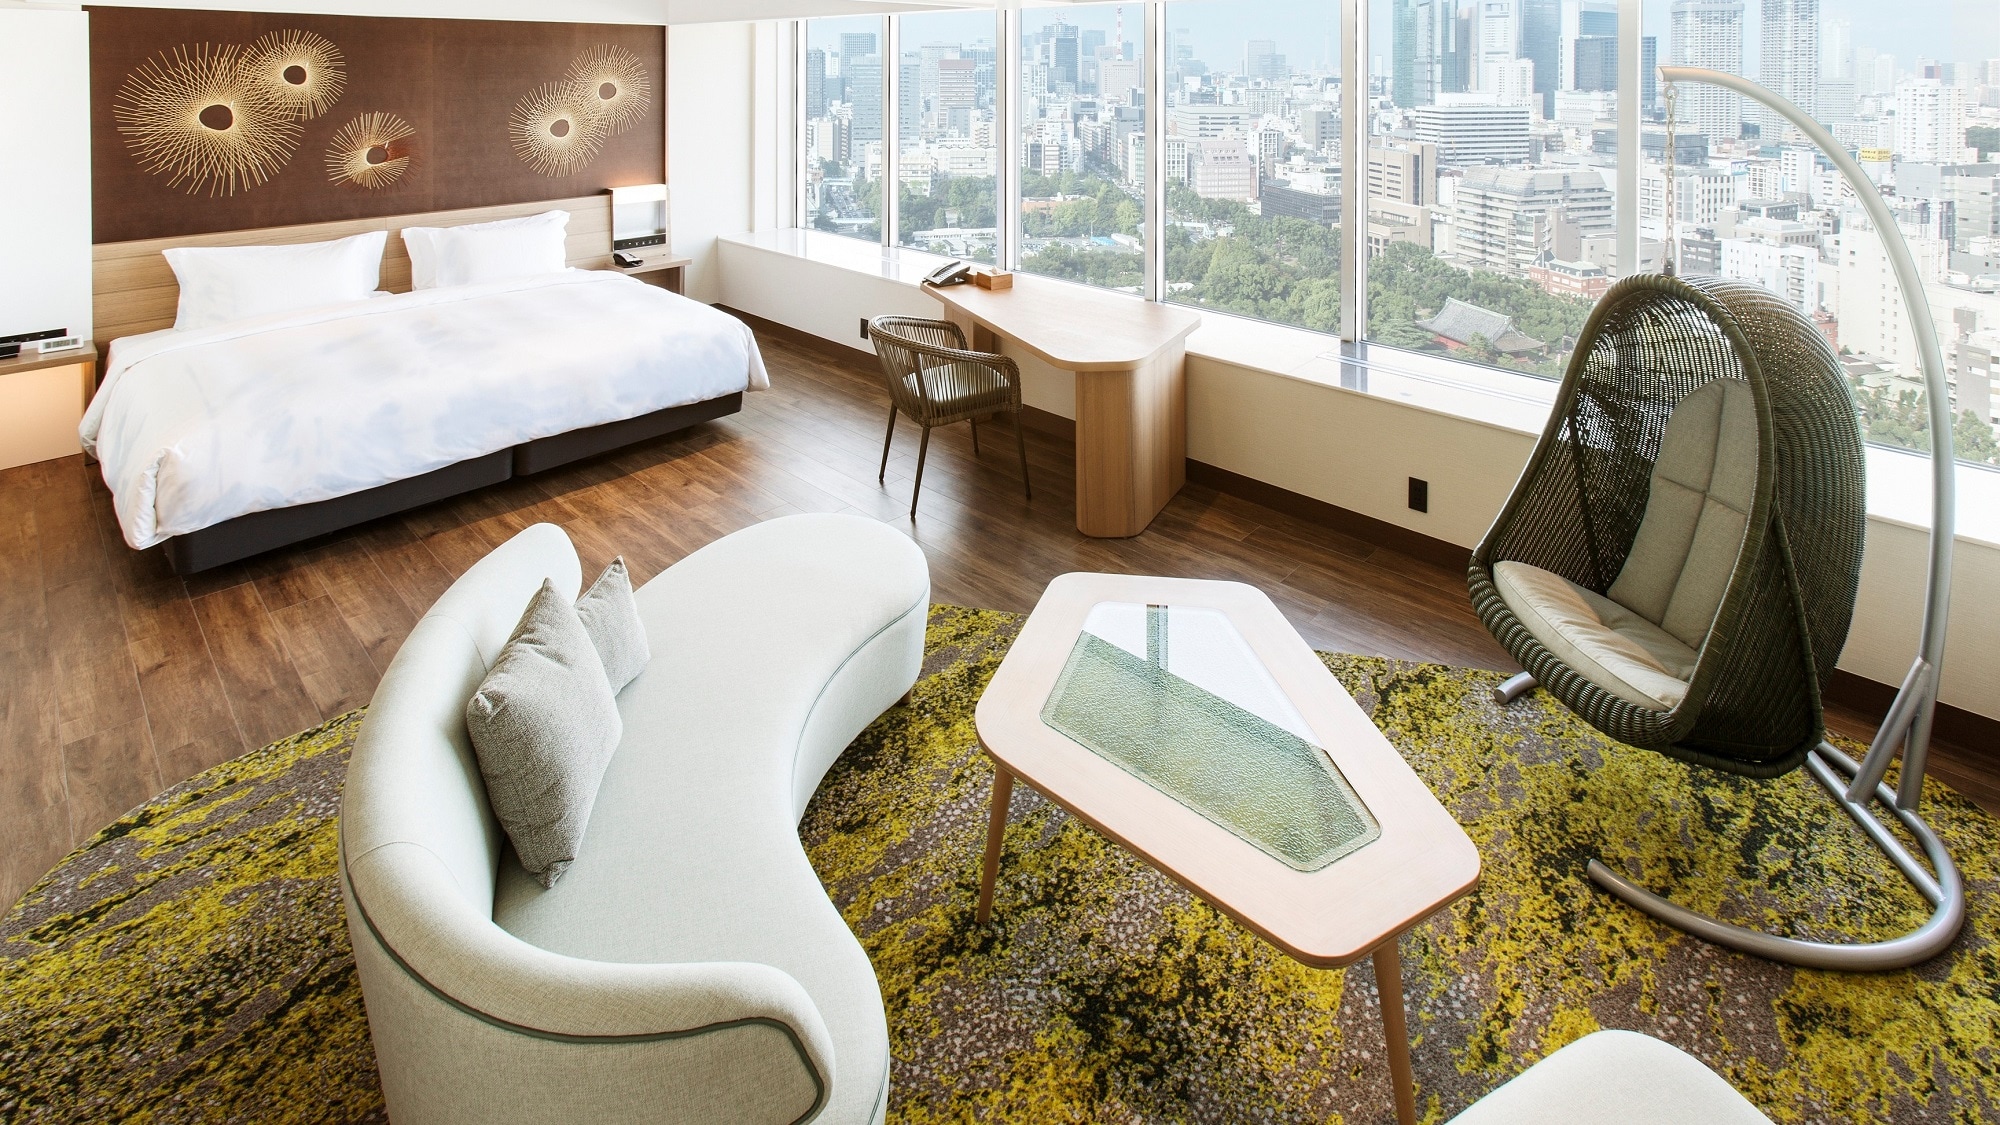 Premium Junior Suite King Room (29th to 31st floors, 50 square meters)